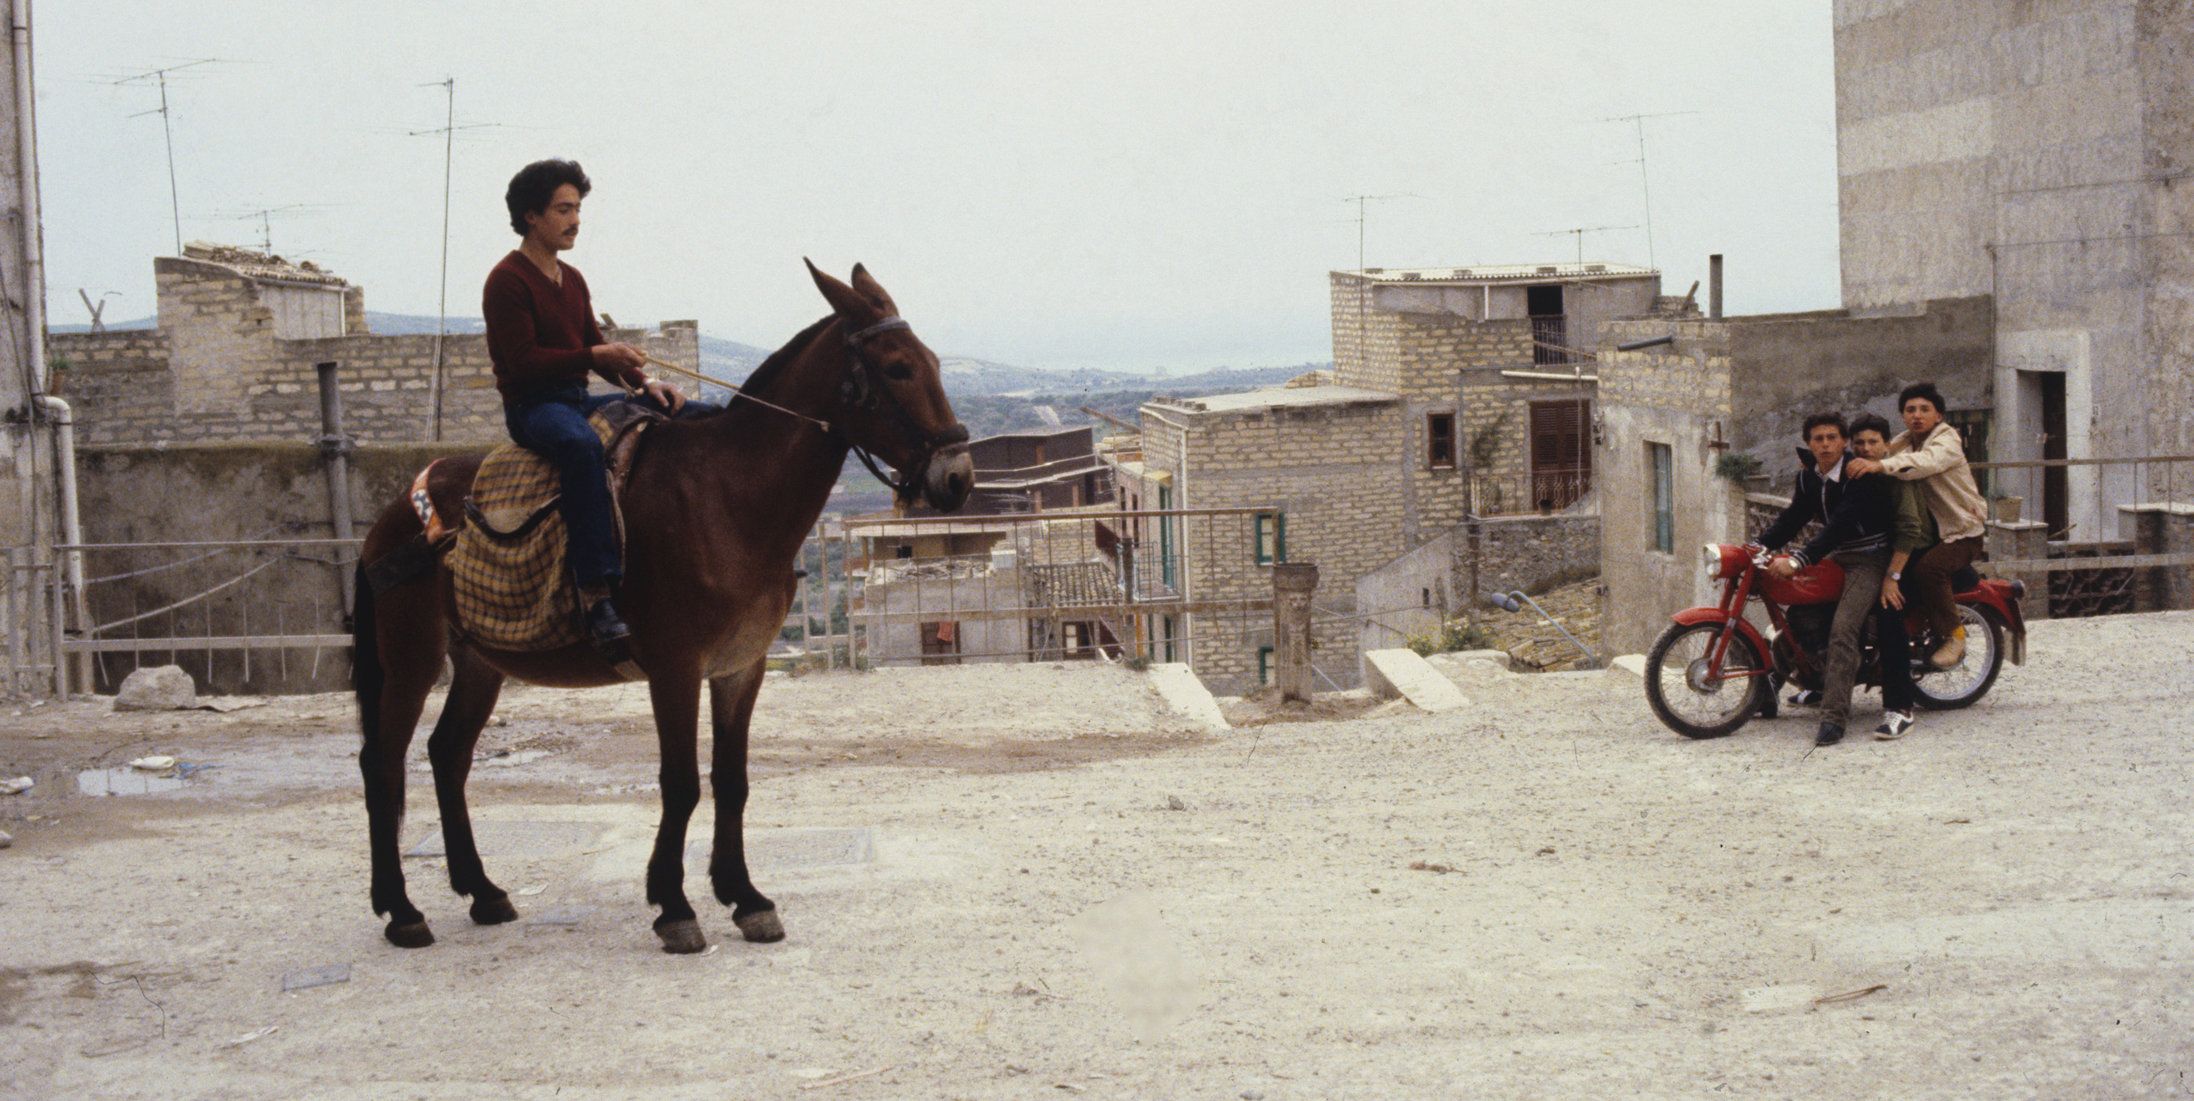 Farbiges Szenenfoto: Ein Mann sitzt auf einem Pferd, im Hintergrund eine heruntergekommene Stadt